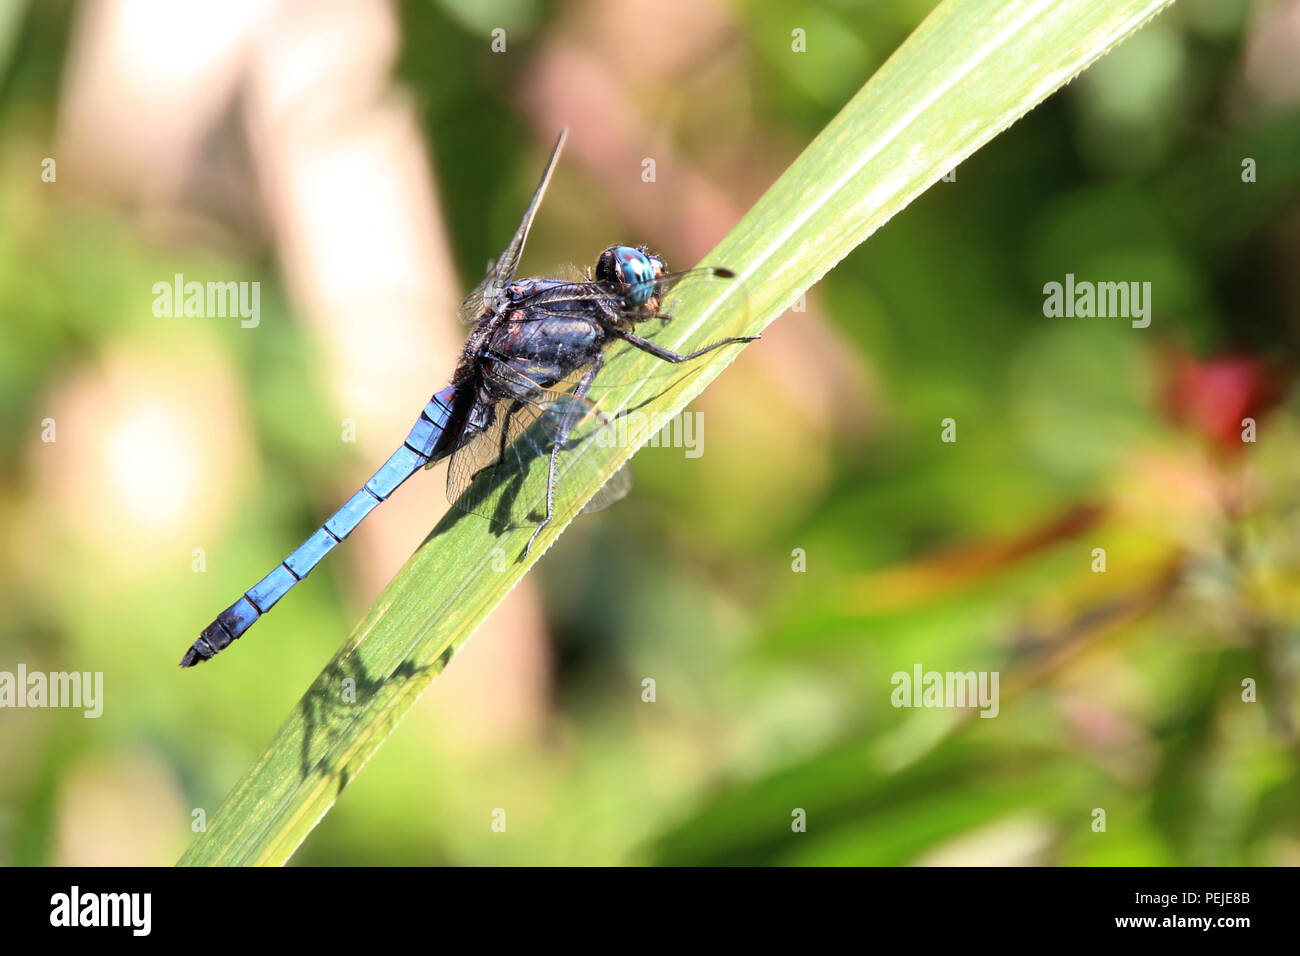 Un primer plano sobre una libélula azul que está aterrizando en una hoja, tiene grandes ojos compuestos, alas transparentes y cuerpo alargado Foto de stock